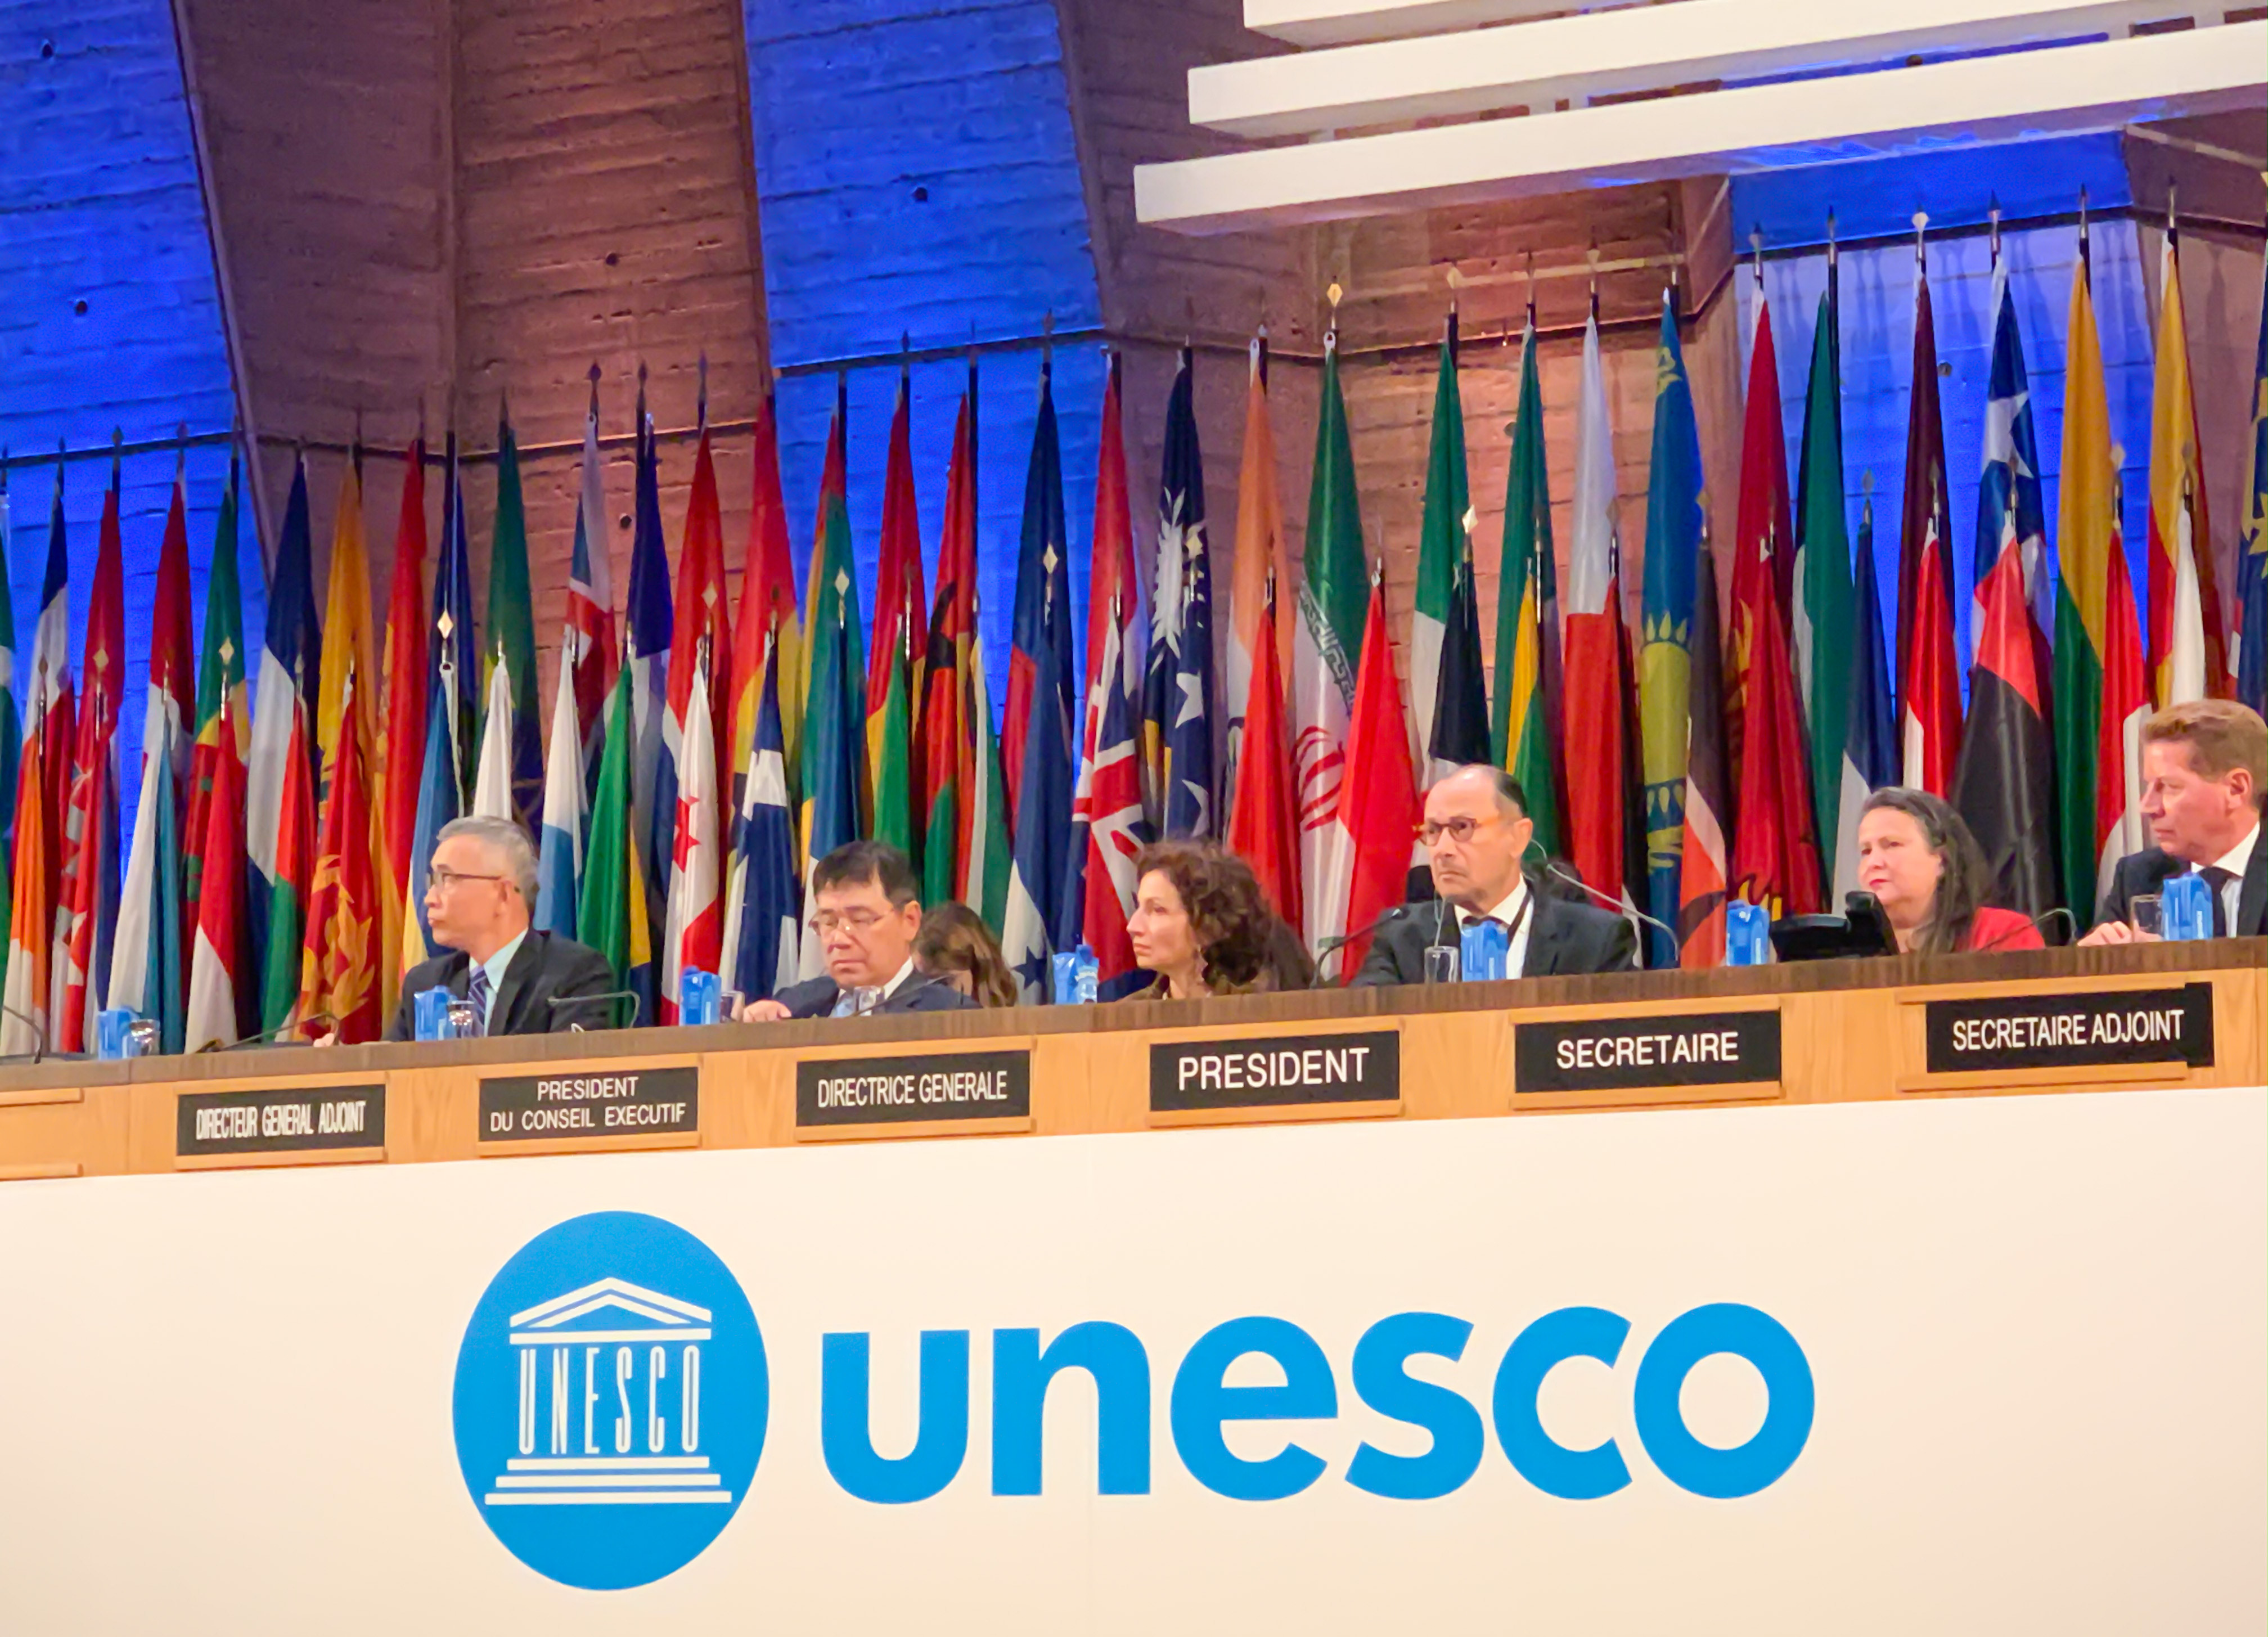 República Dominicana preside debates Política General de la 40a Conferencia UNESCO